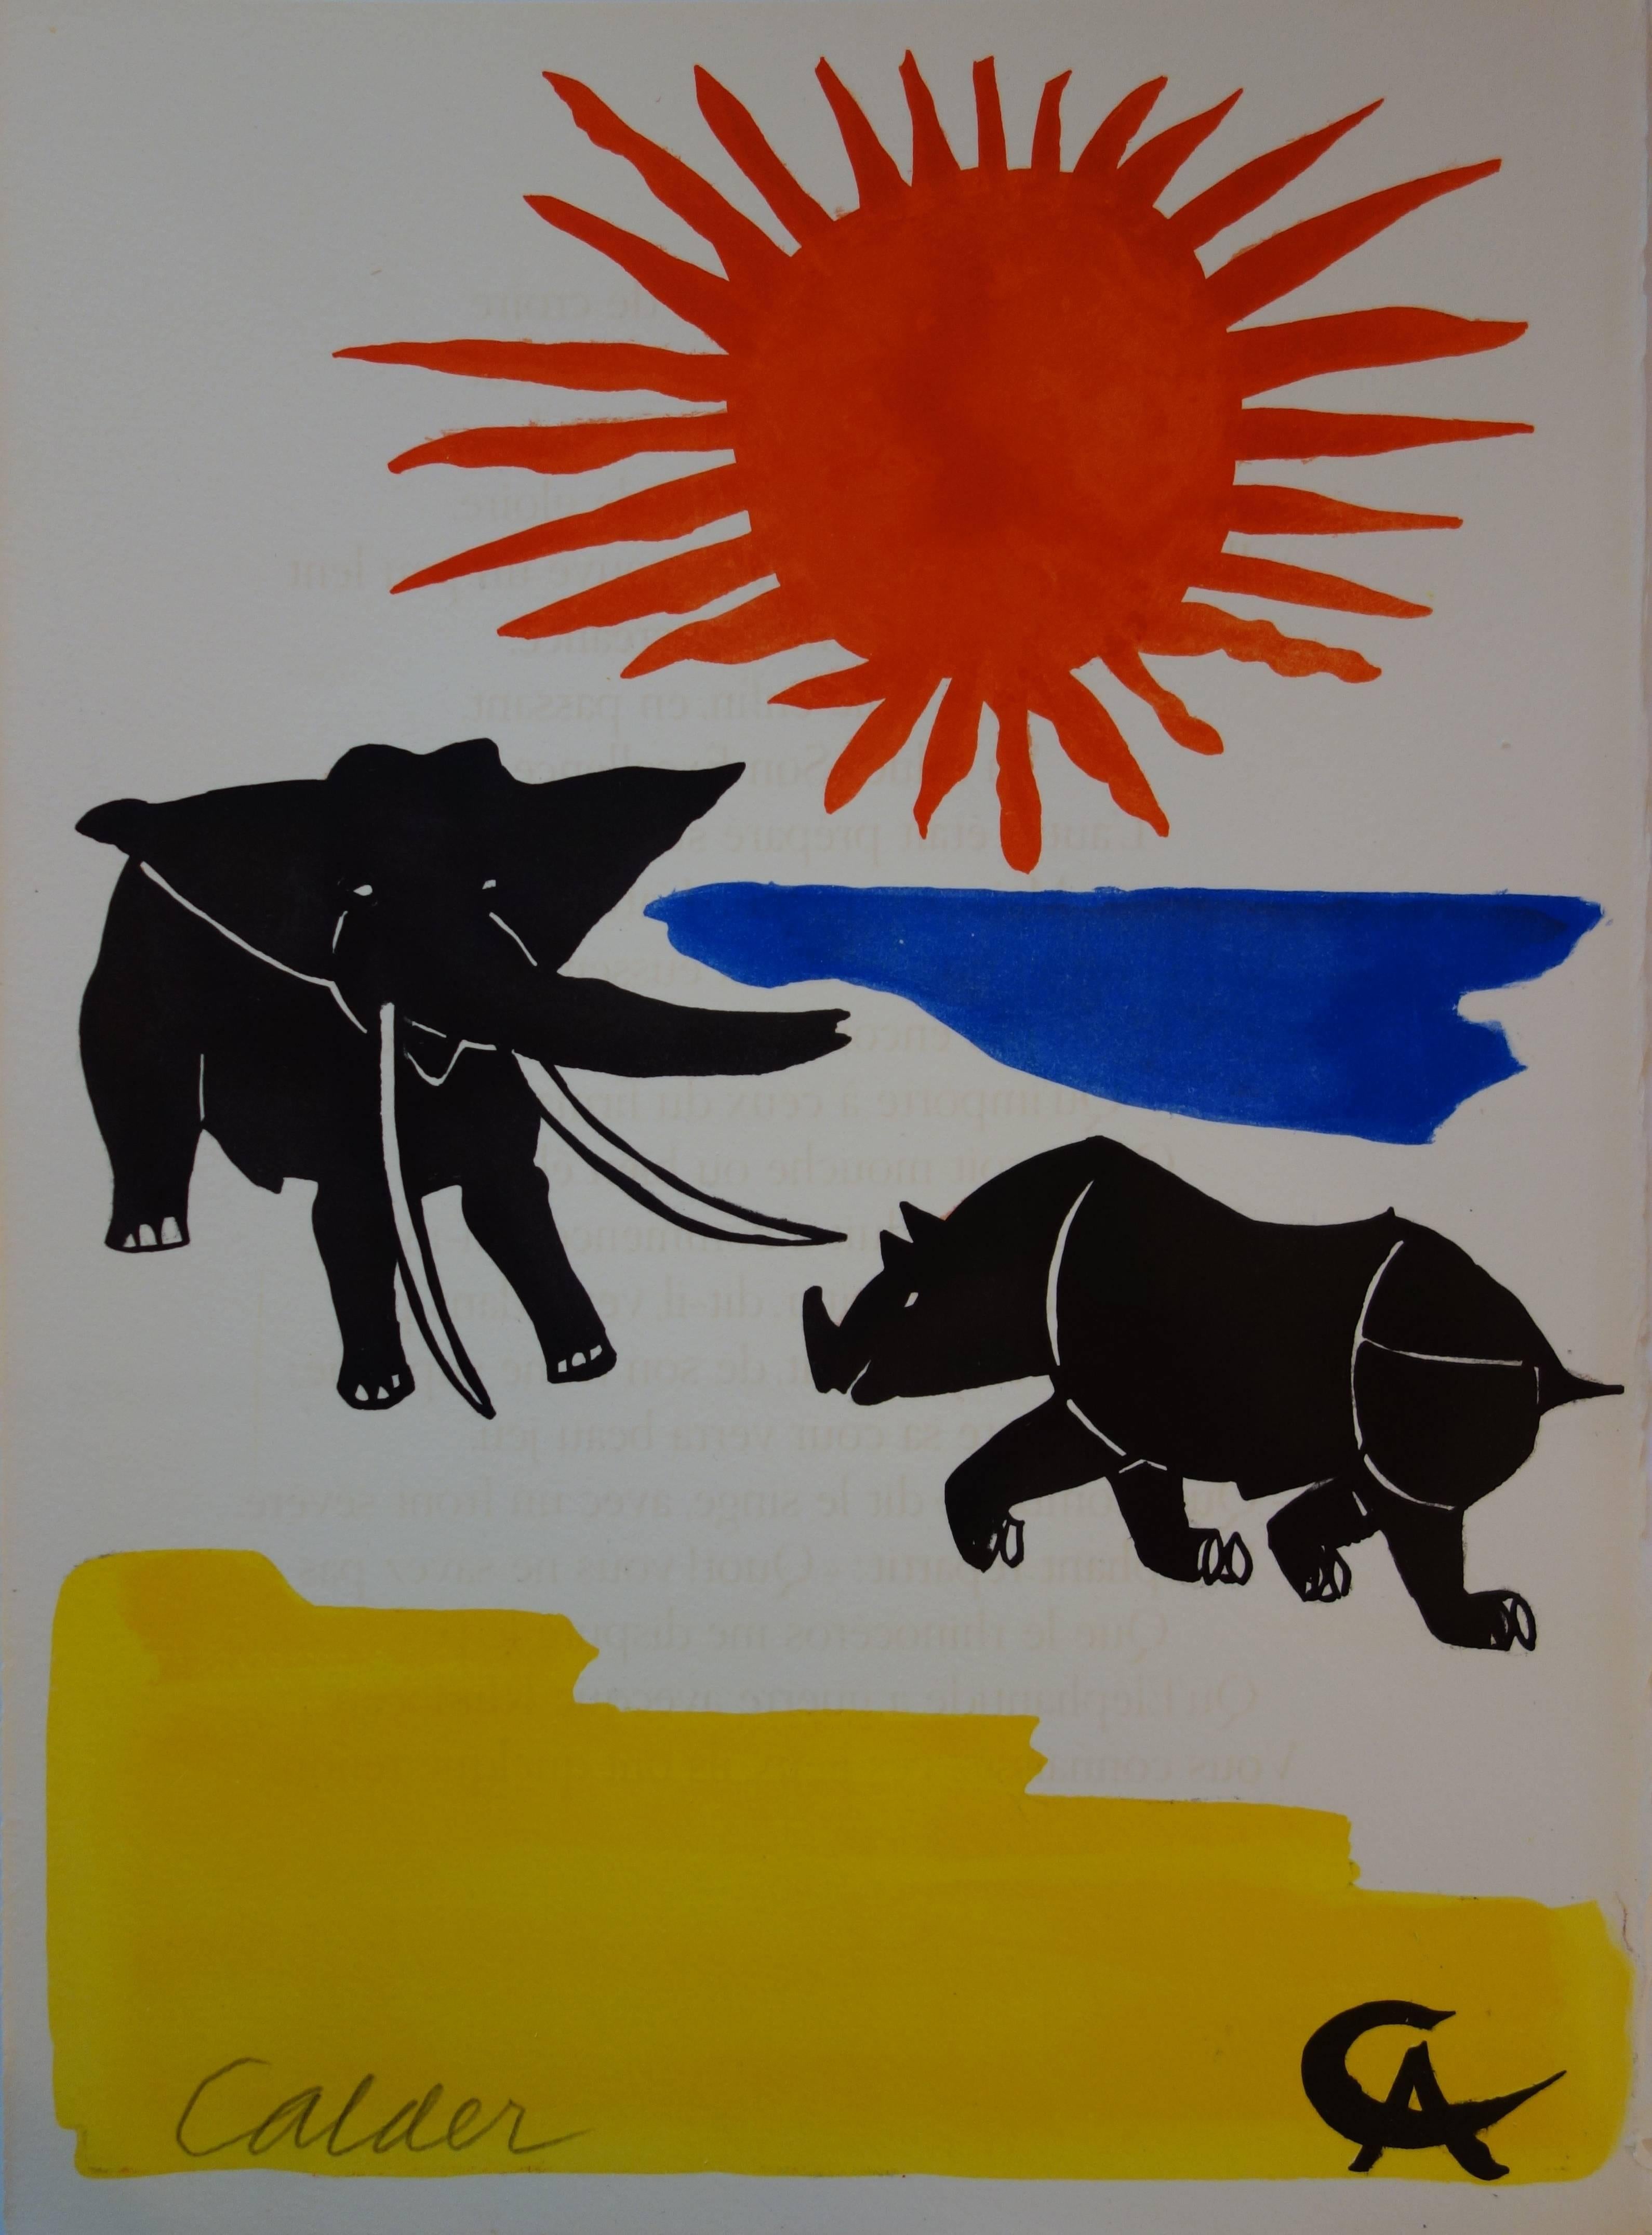 Alexander Calder Animal Print - Elephant & Rhinoceros - Original handsigned lithograph - 1966